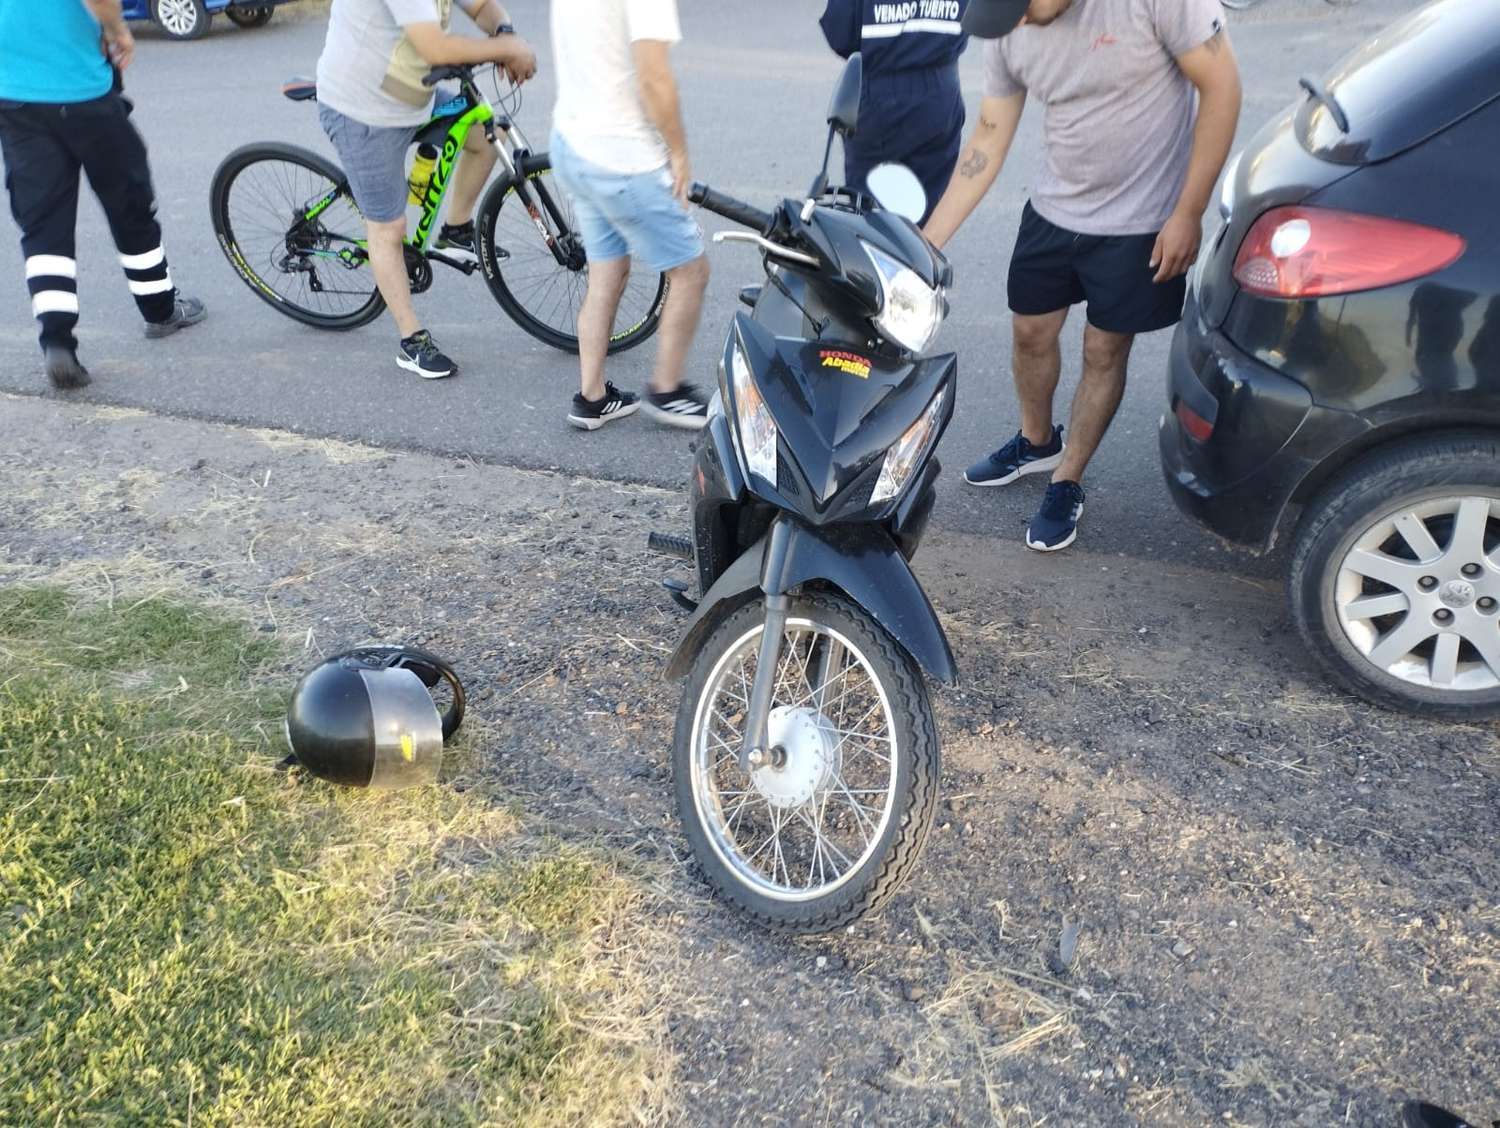 La motociclista debió ser hospitalizada. Foto: Bomberos de Venado Tuerto.